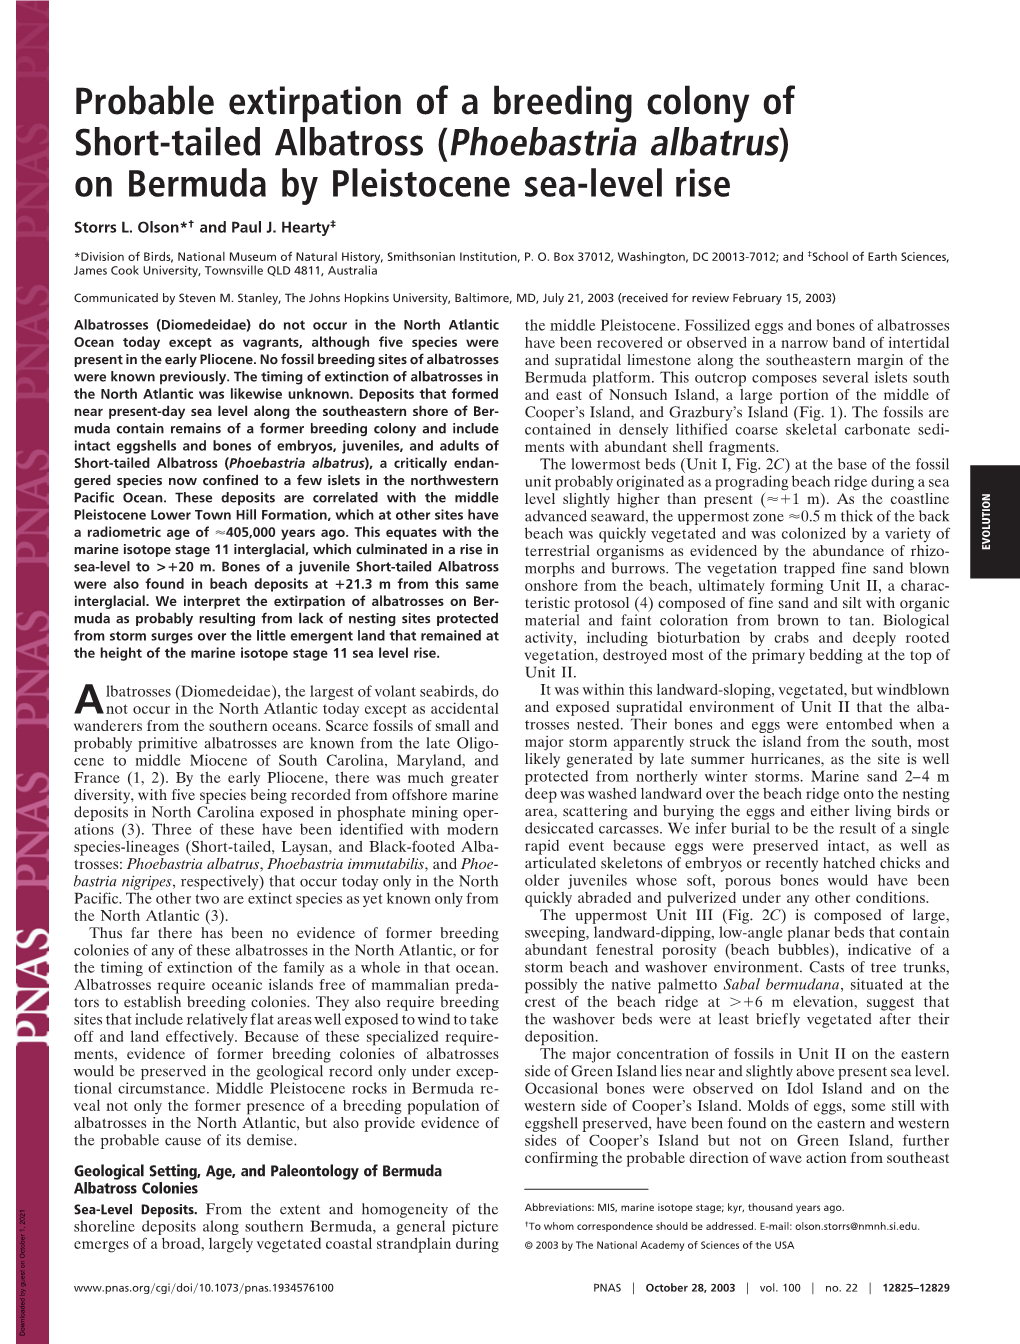 Phoebastria Albatrus) on Bermuda by Pleistocene Sea-Level Rise